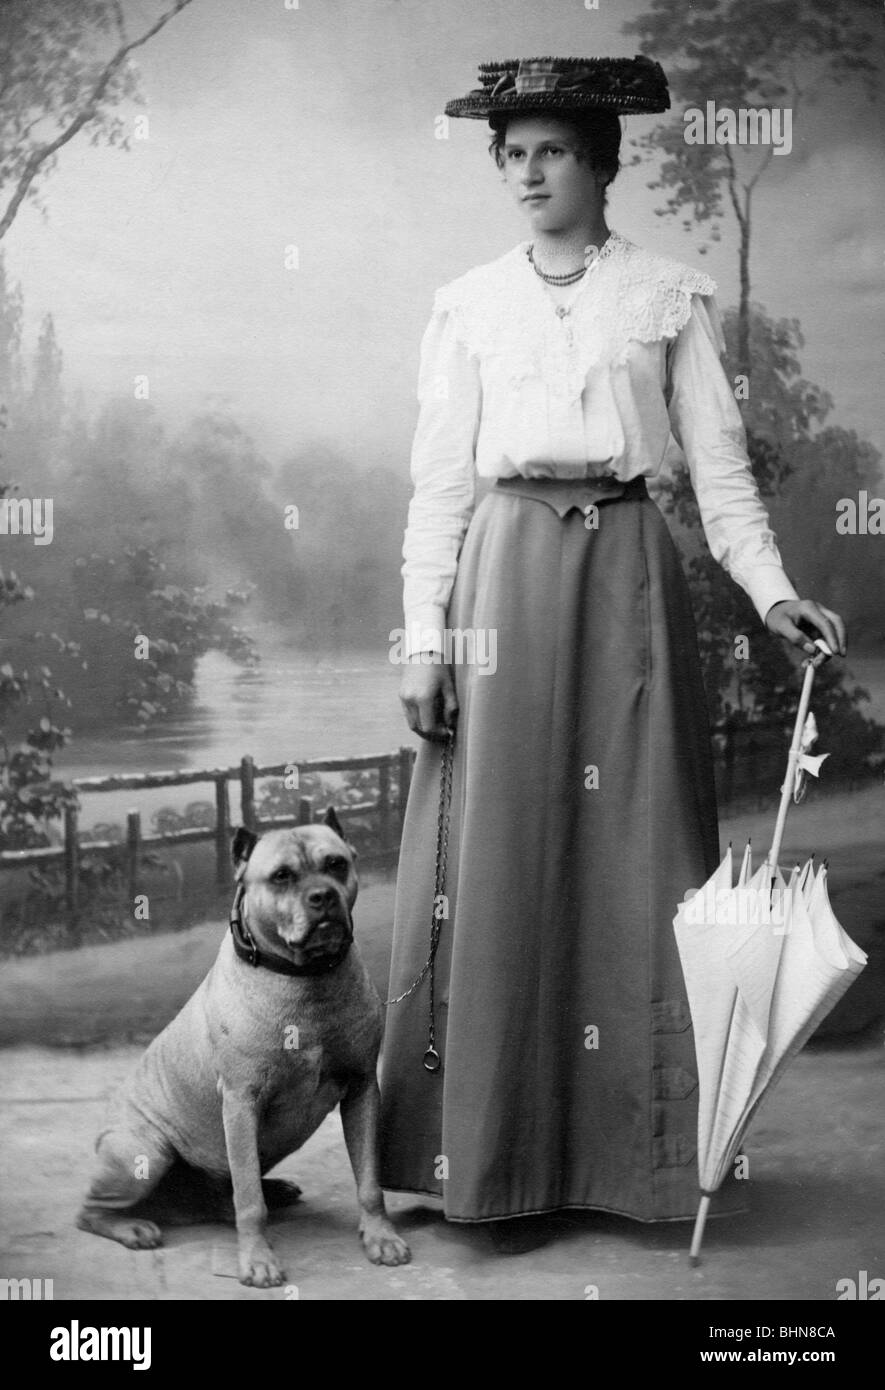 Les gens, les femmes, 1900 - 1930, femme avec parapluie et chien, carte de  cabinet, Munich, vers 1900, Allemagne, Empire allemand, chapeau, chapeaux,  jupe longue, ombre, nuances, mode, pleine longueur, au tournant